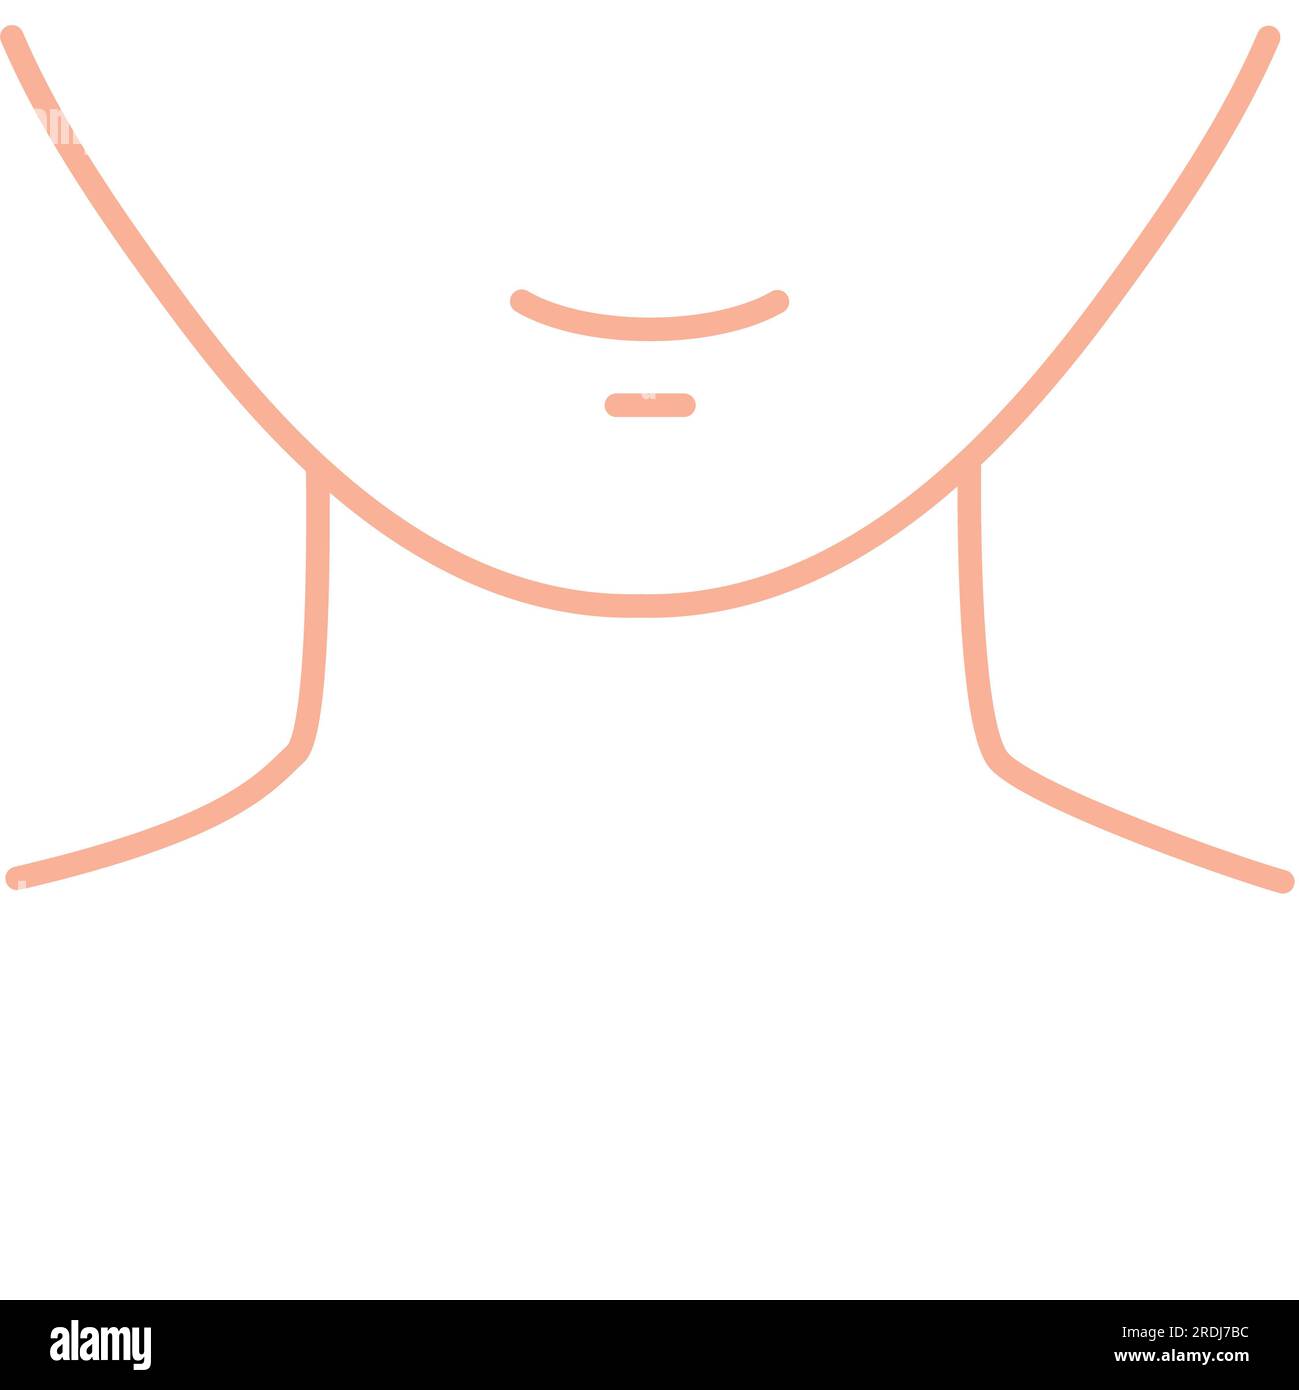 Anonymes Gesicht, konzeptionelle Illustration Stockfoto